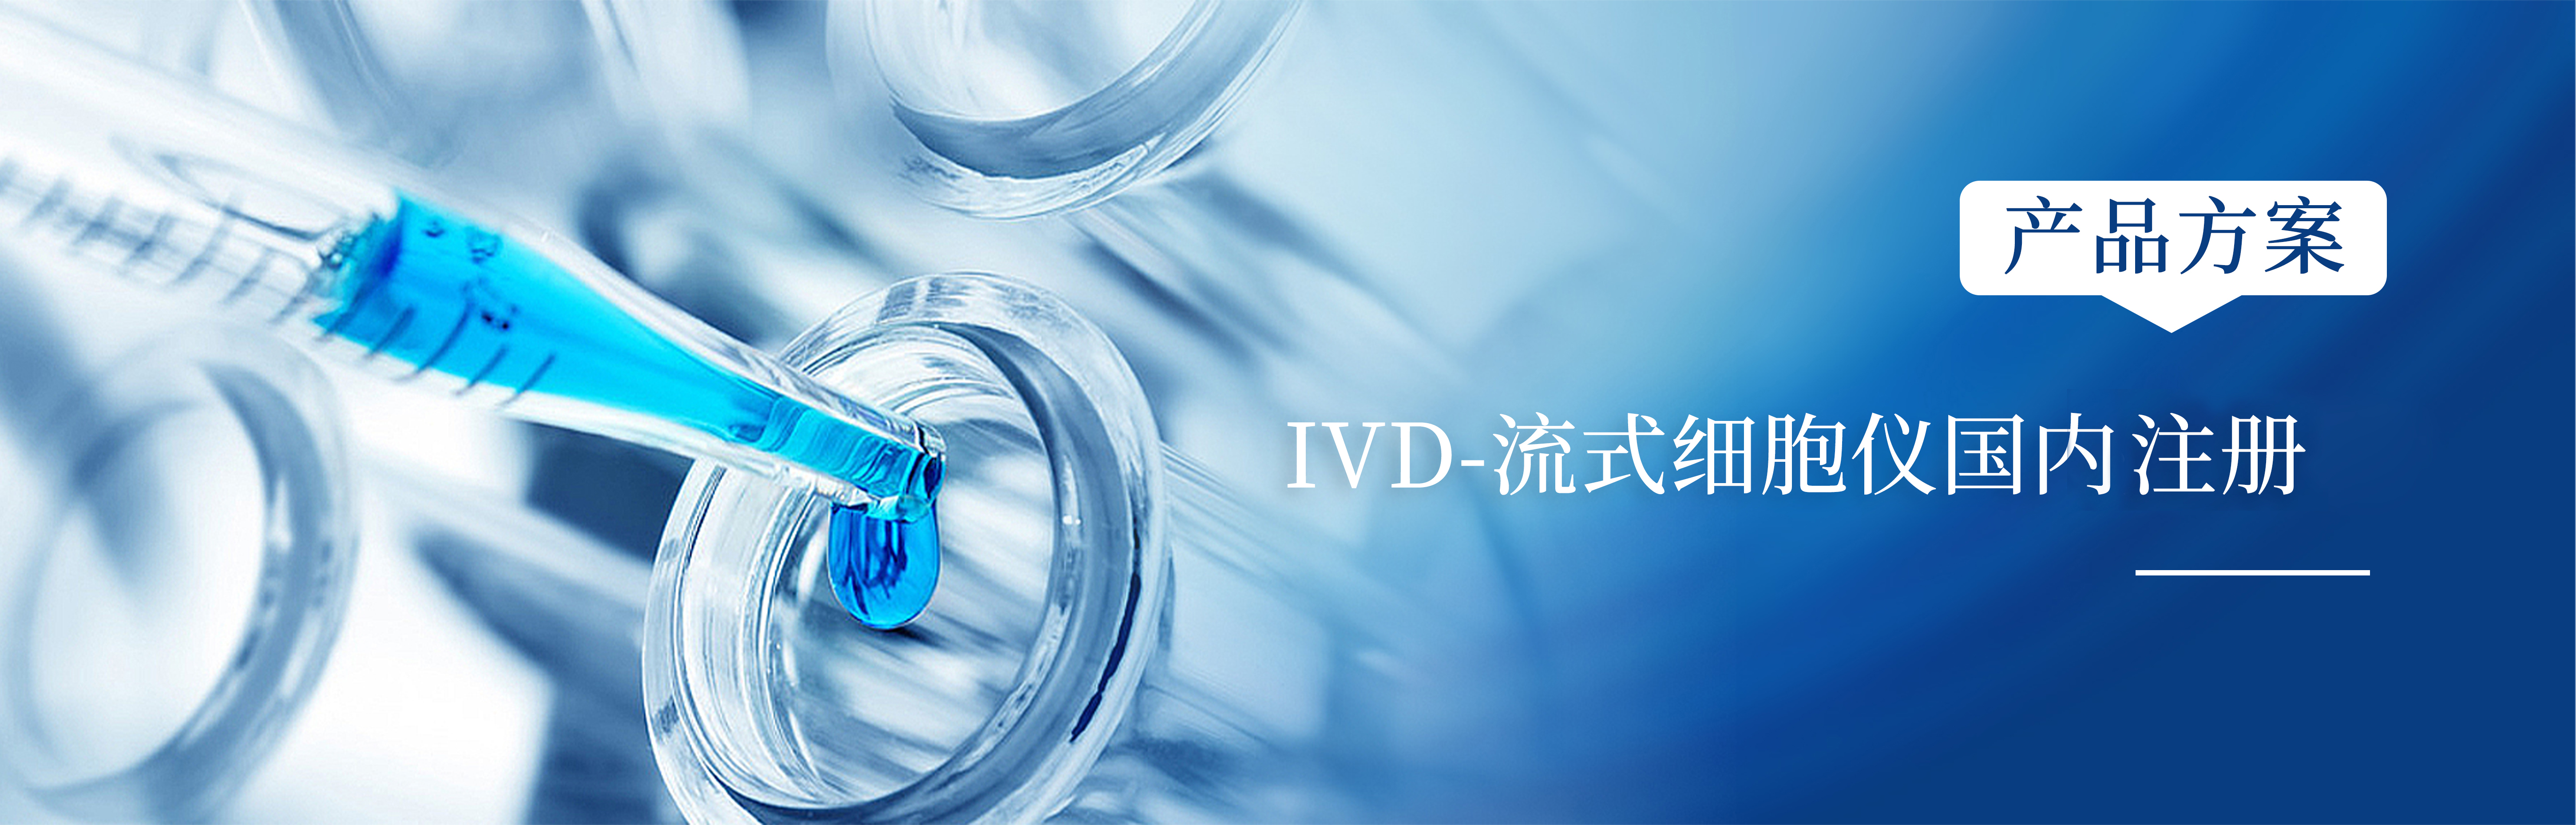 产品方案 | IVD-流式细胞仪国内注册